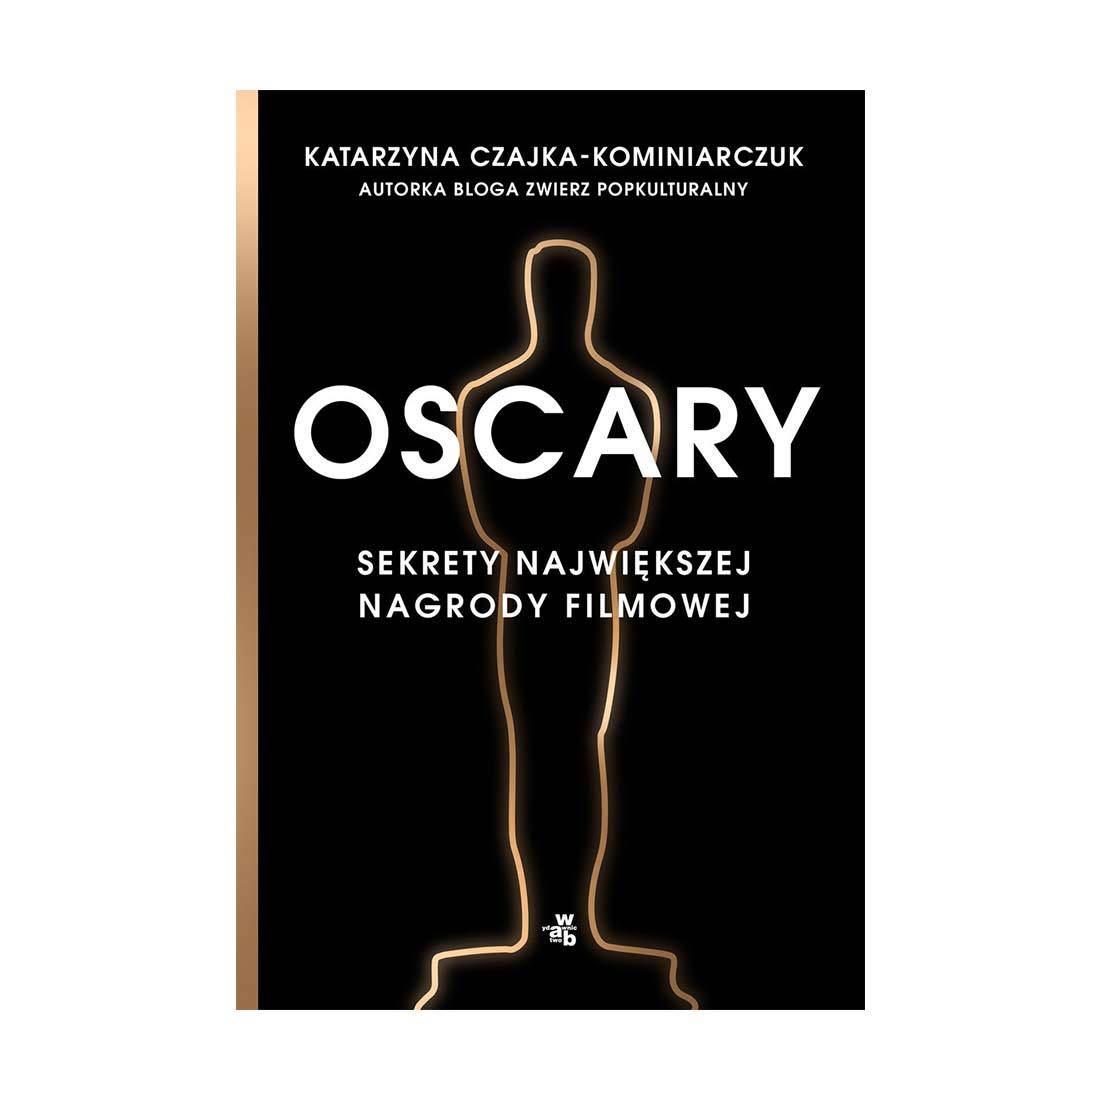 Okładka książki „Oscary. Sekrety największej nagrody filmowej” (Fot. materiały prasowe) 